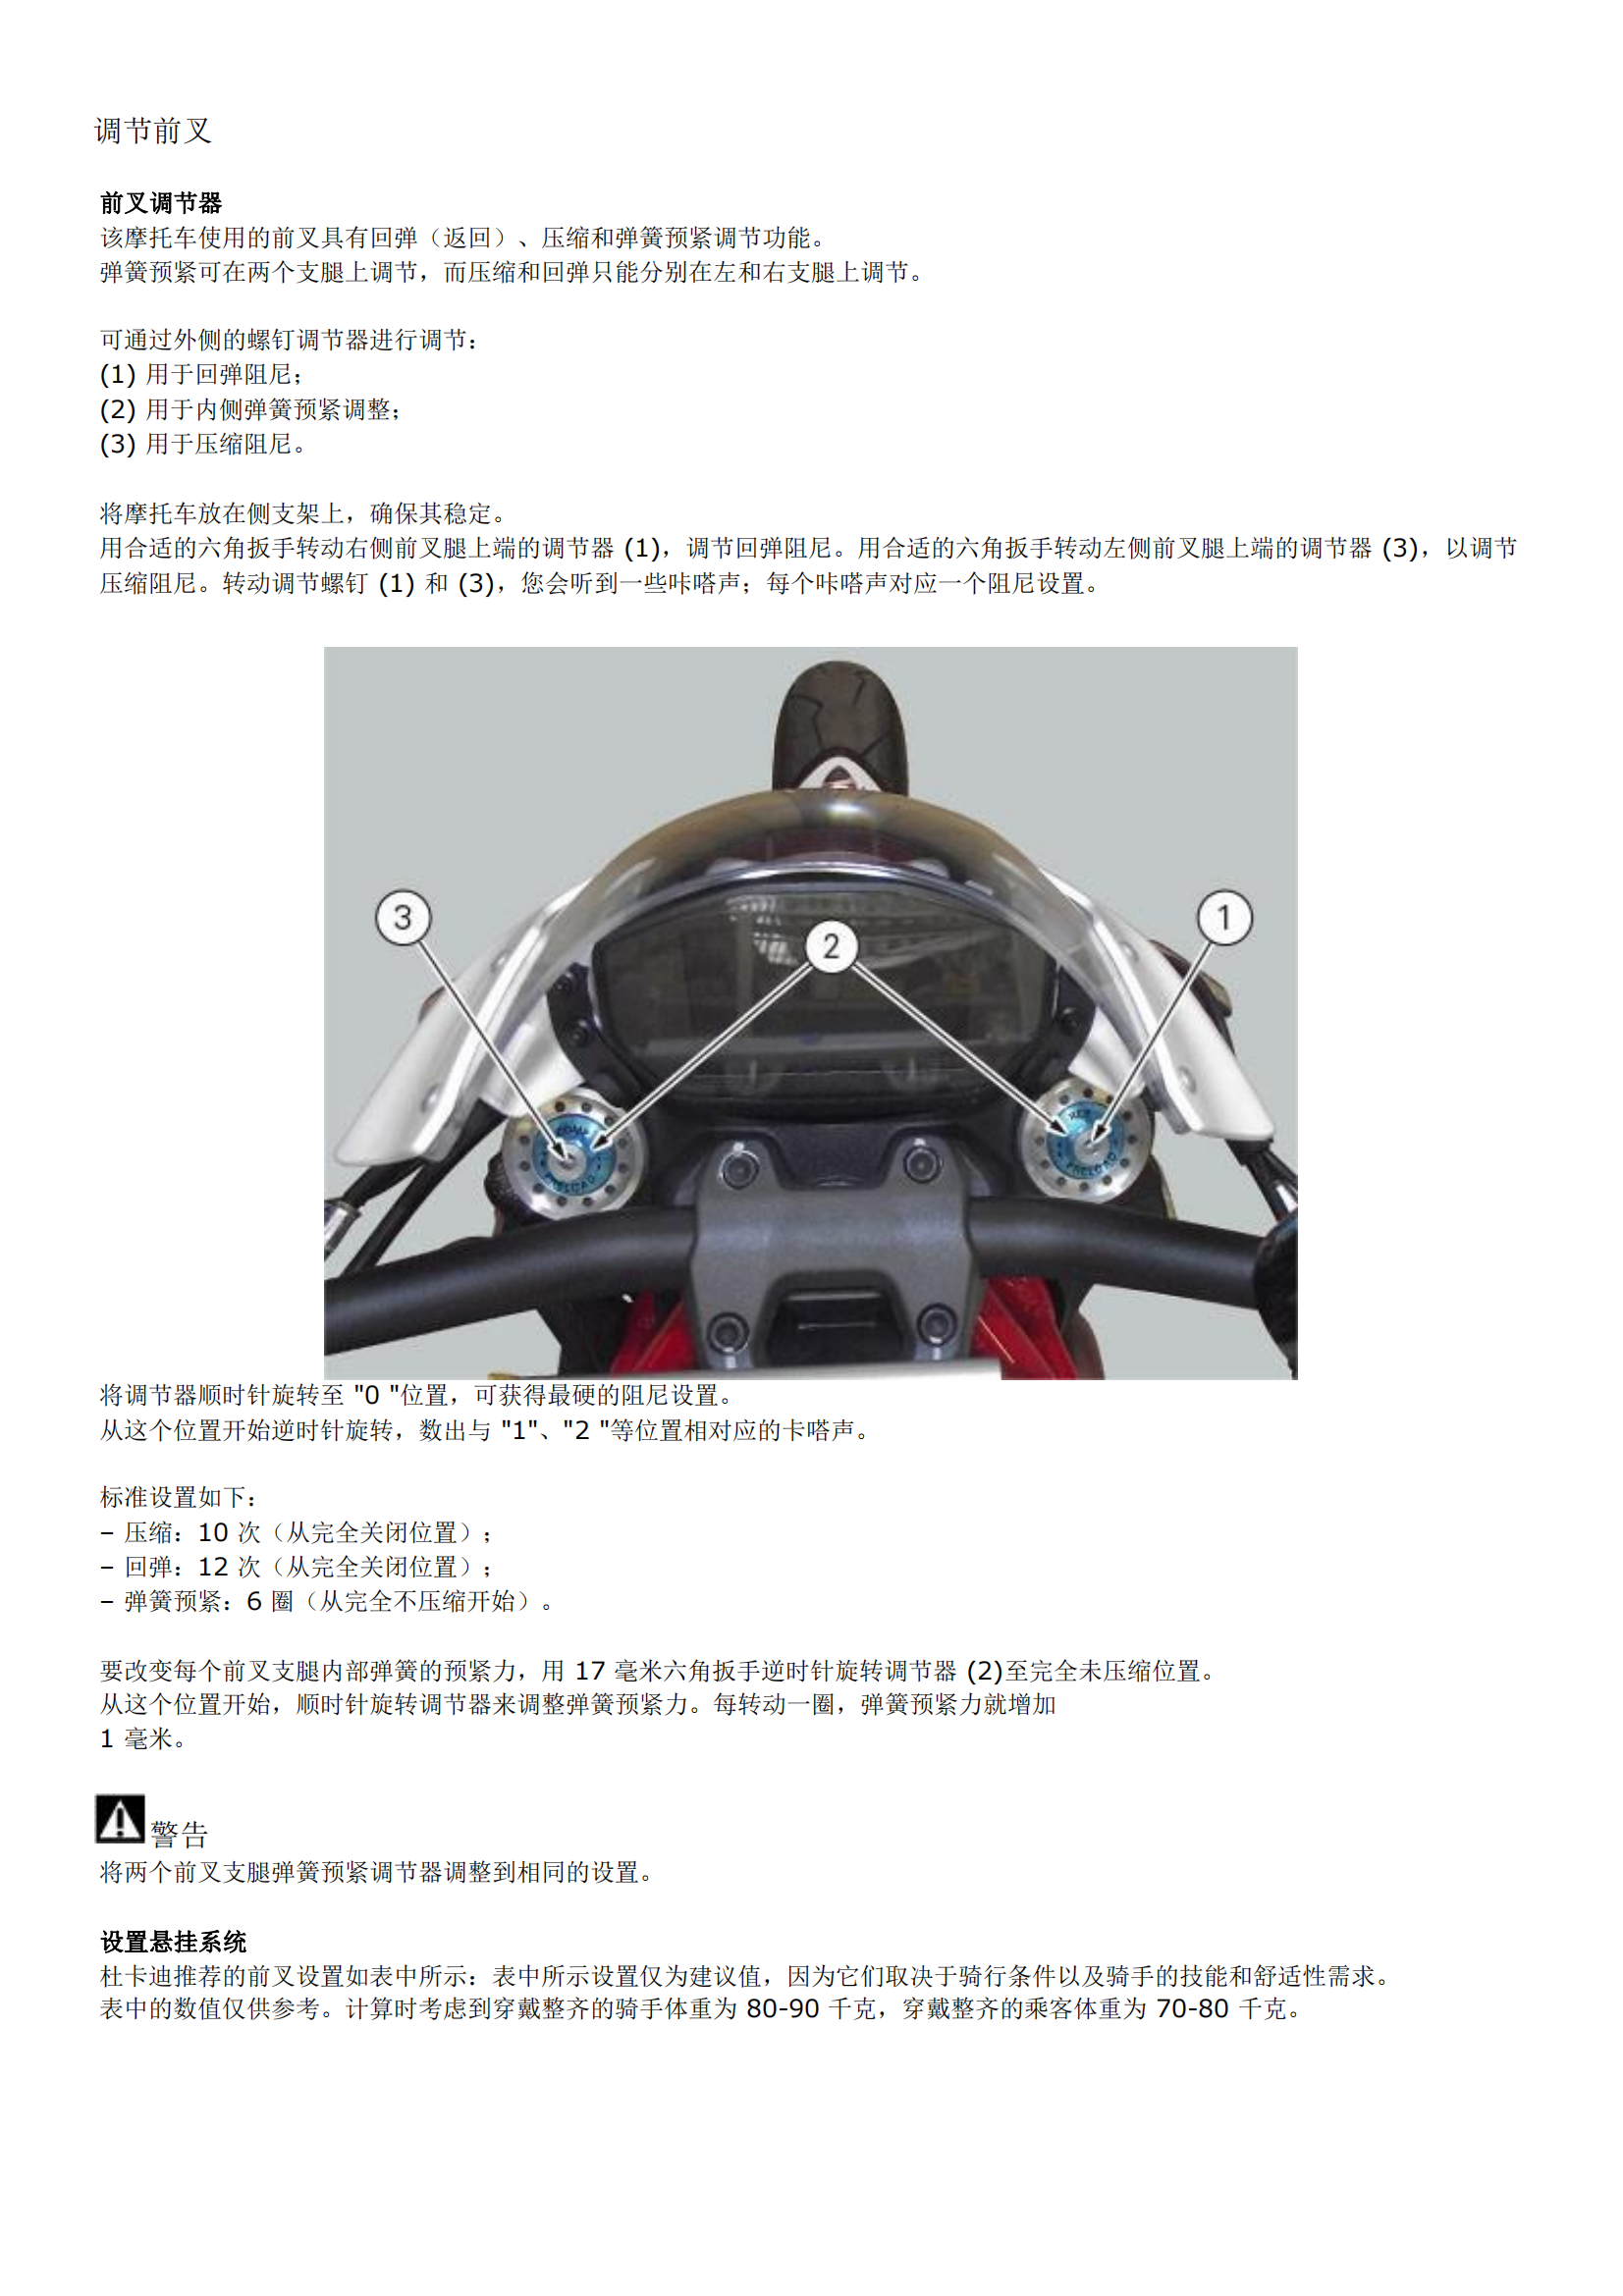 简体中文2016-2019年杜卡迪怪兽1200R Ducati monster 1200 R维修手册插图1